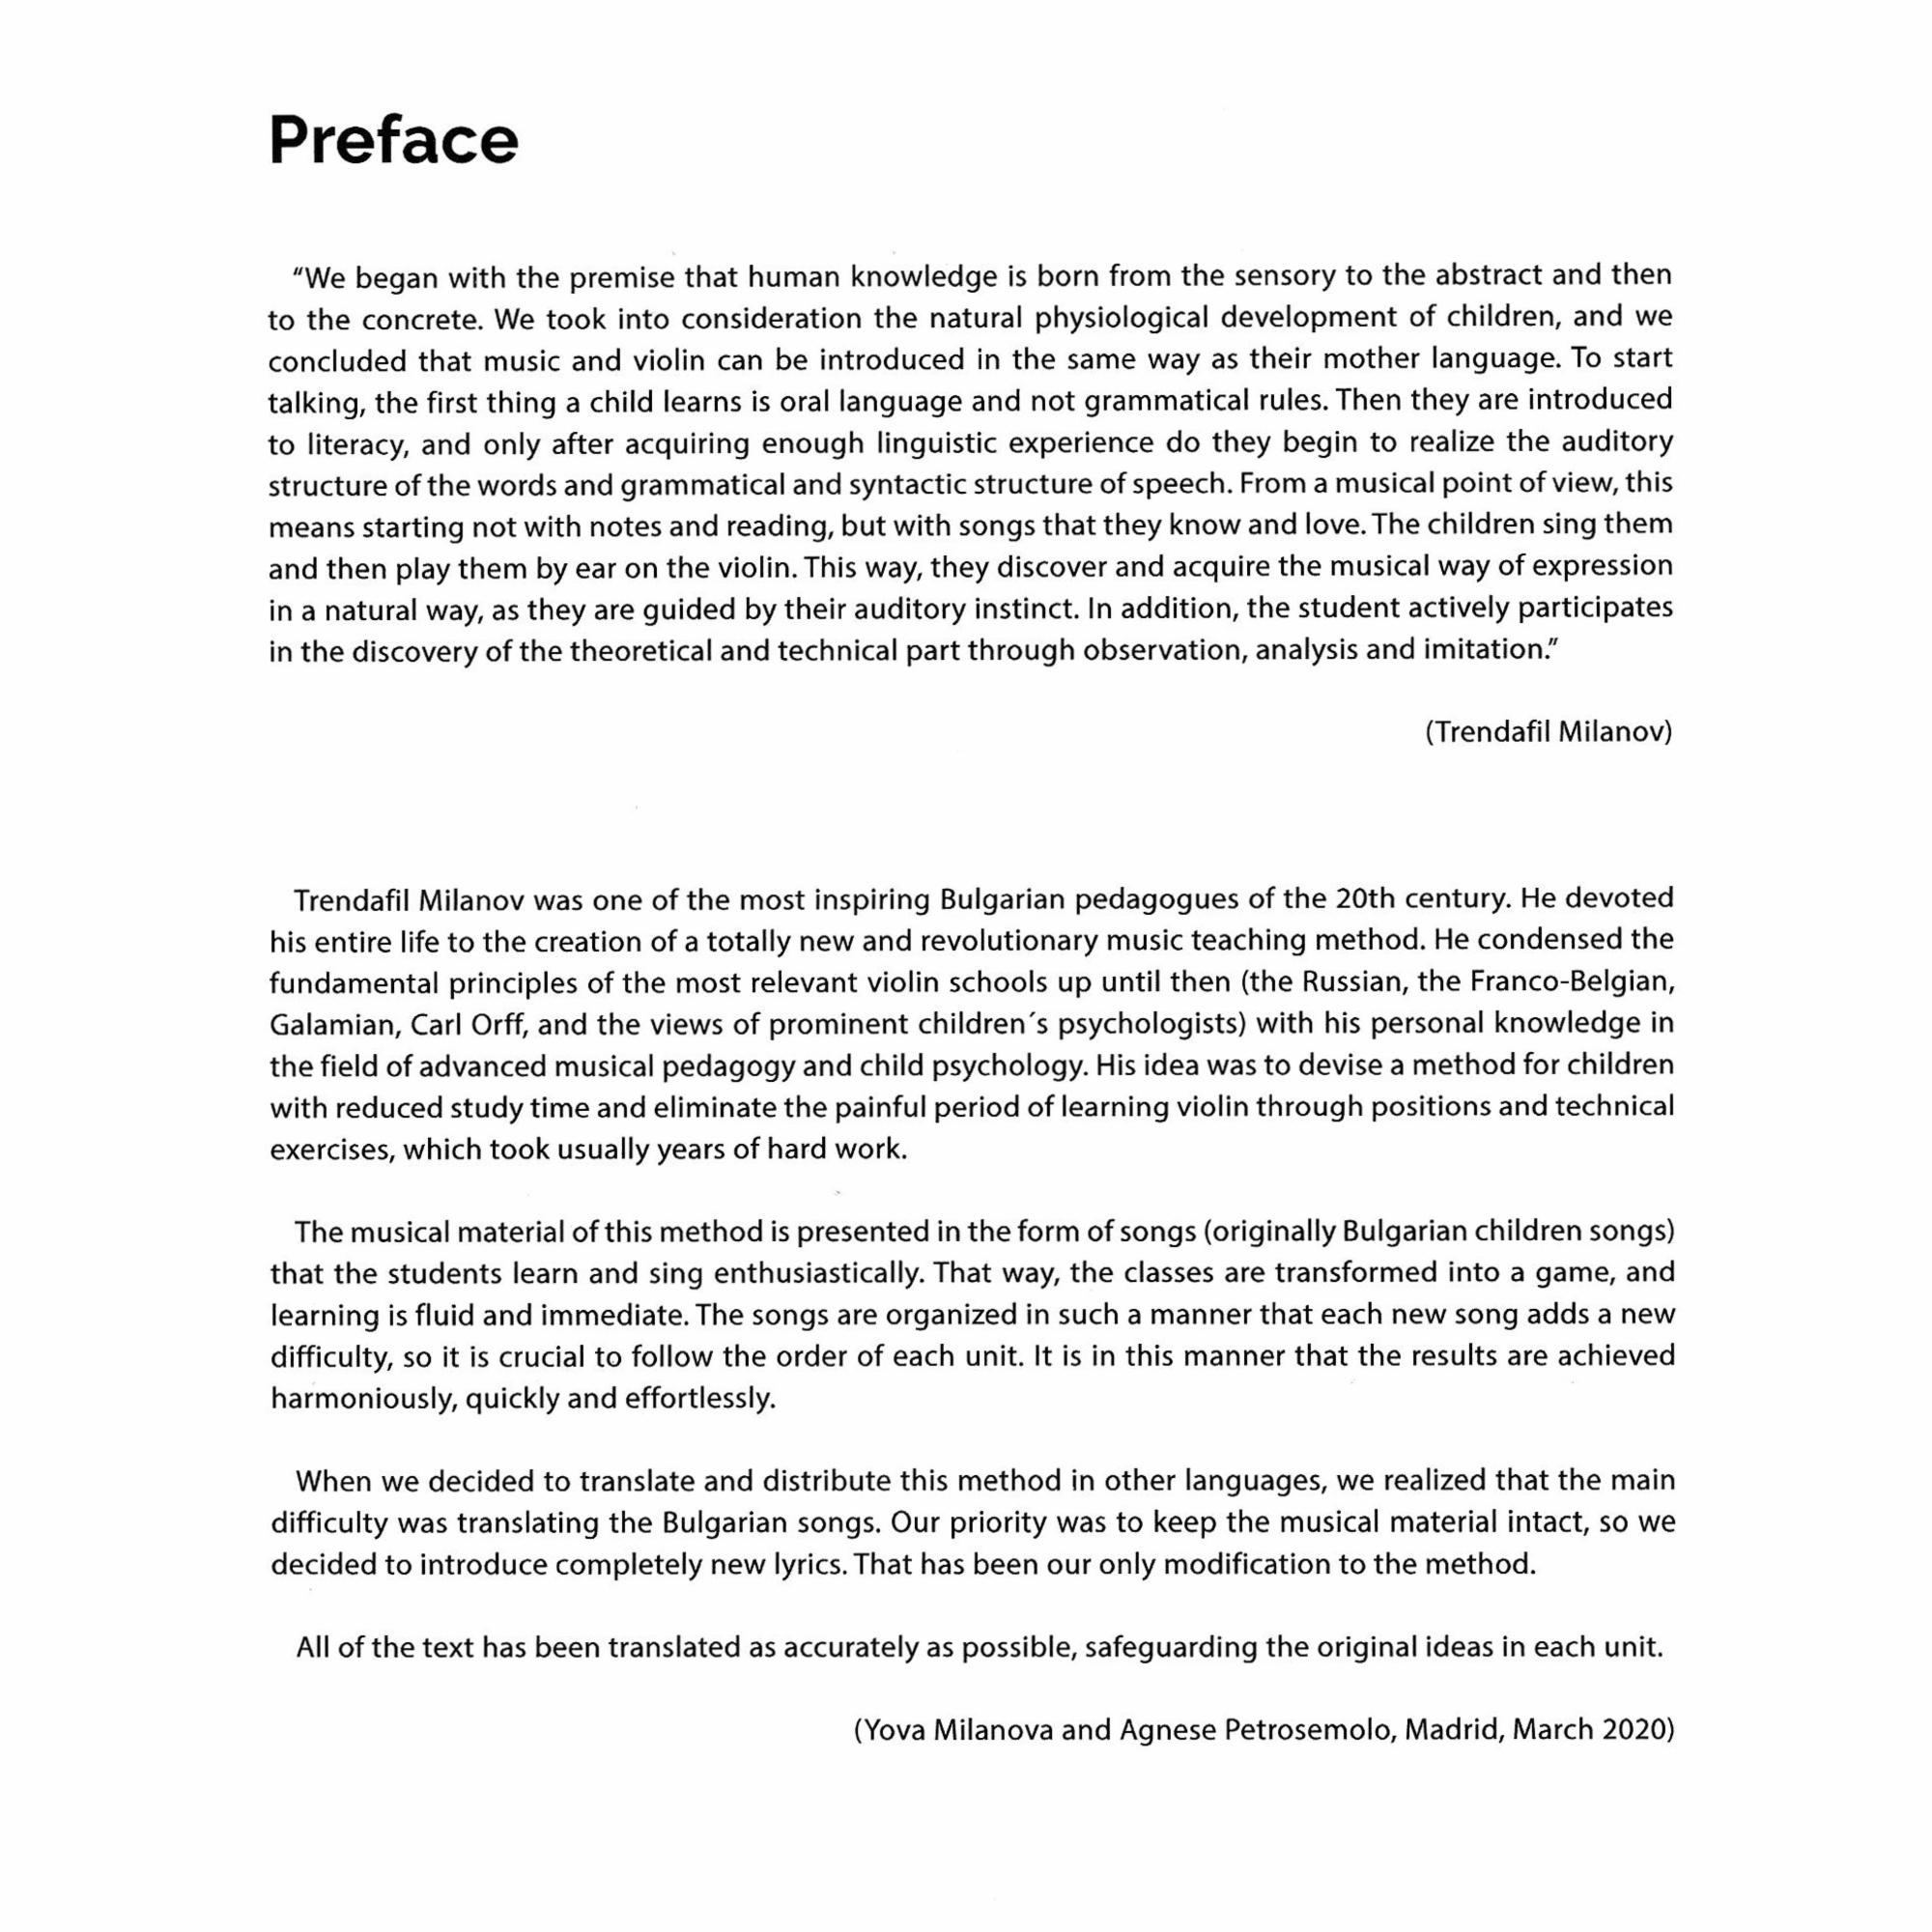 Sample: Book I (Preface)